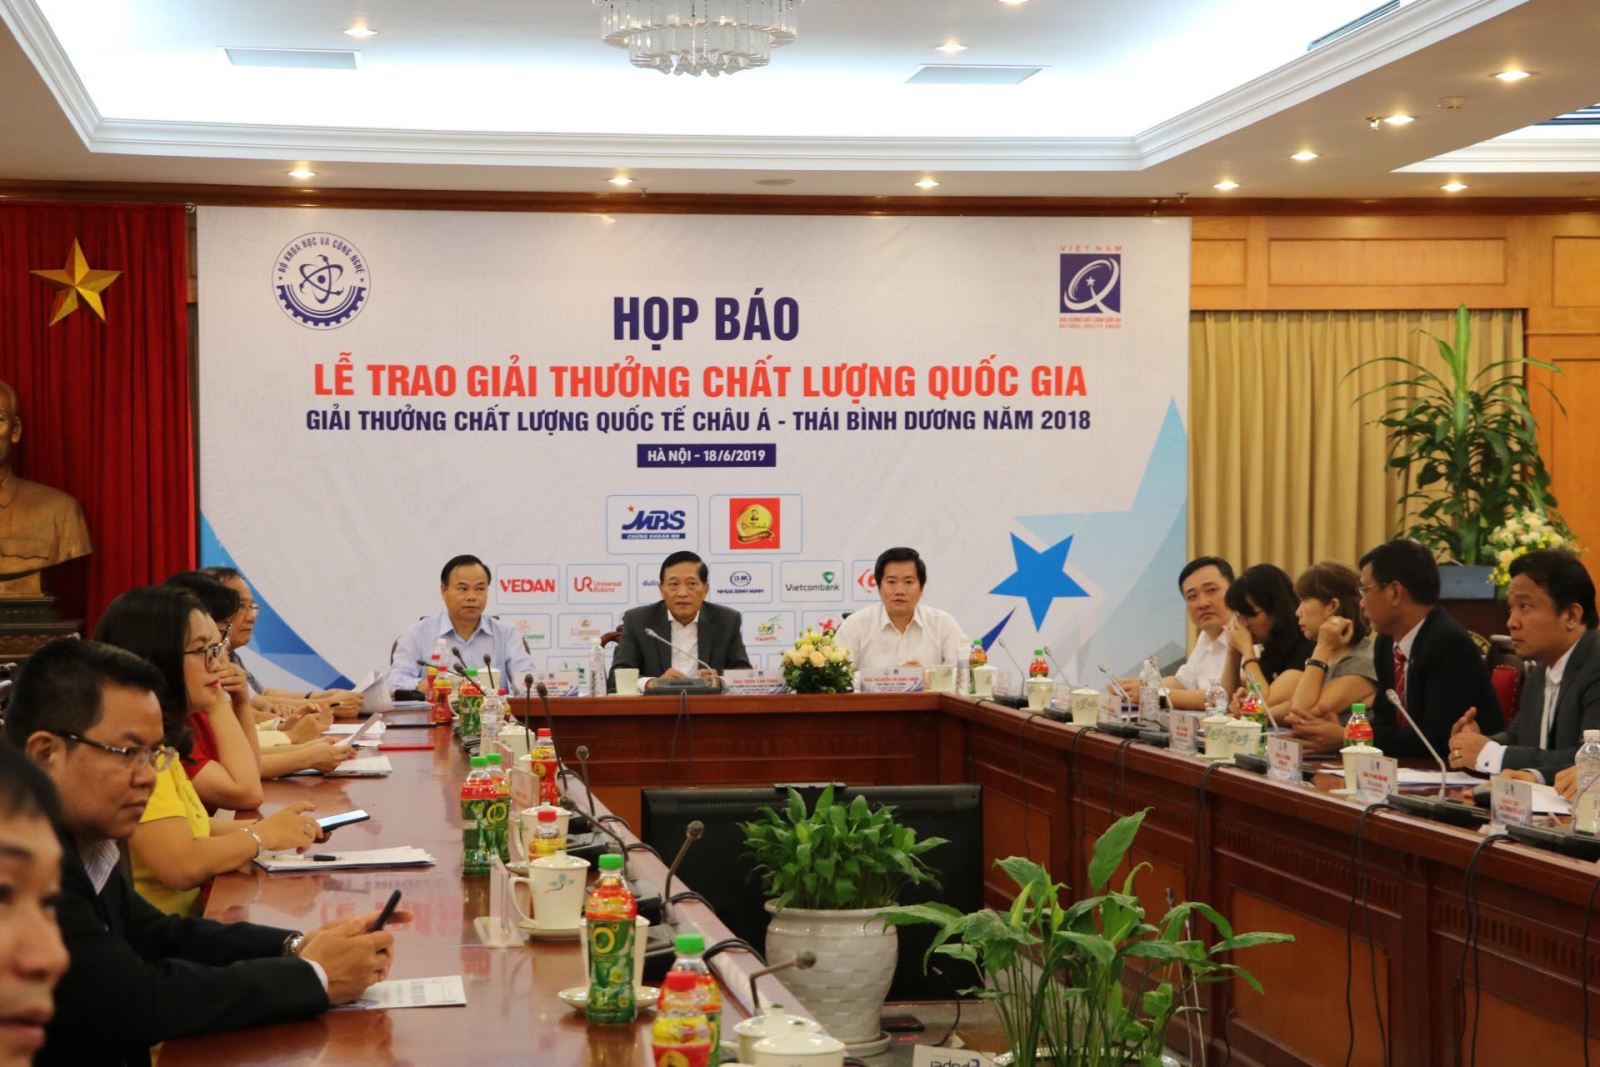 Giải thưởng Chất lượng quốc gia - hướng tới các chuẩn mực quốc tế cho doanh nghiệp Việt